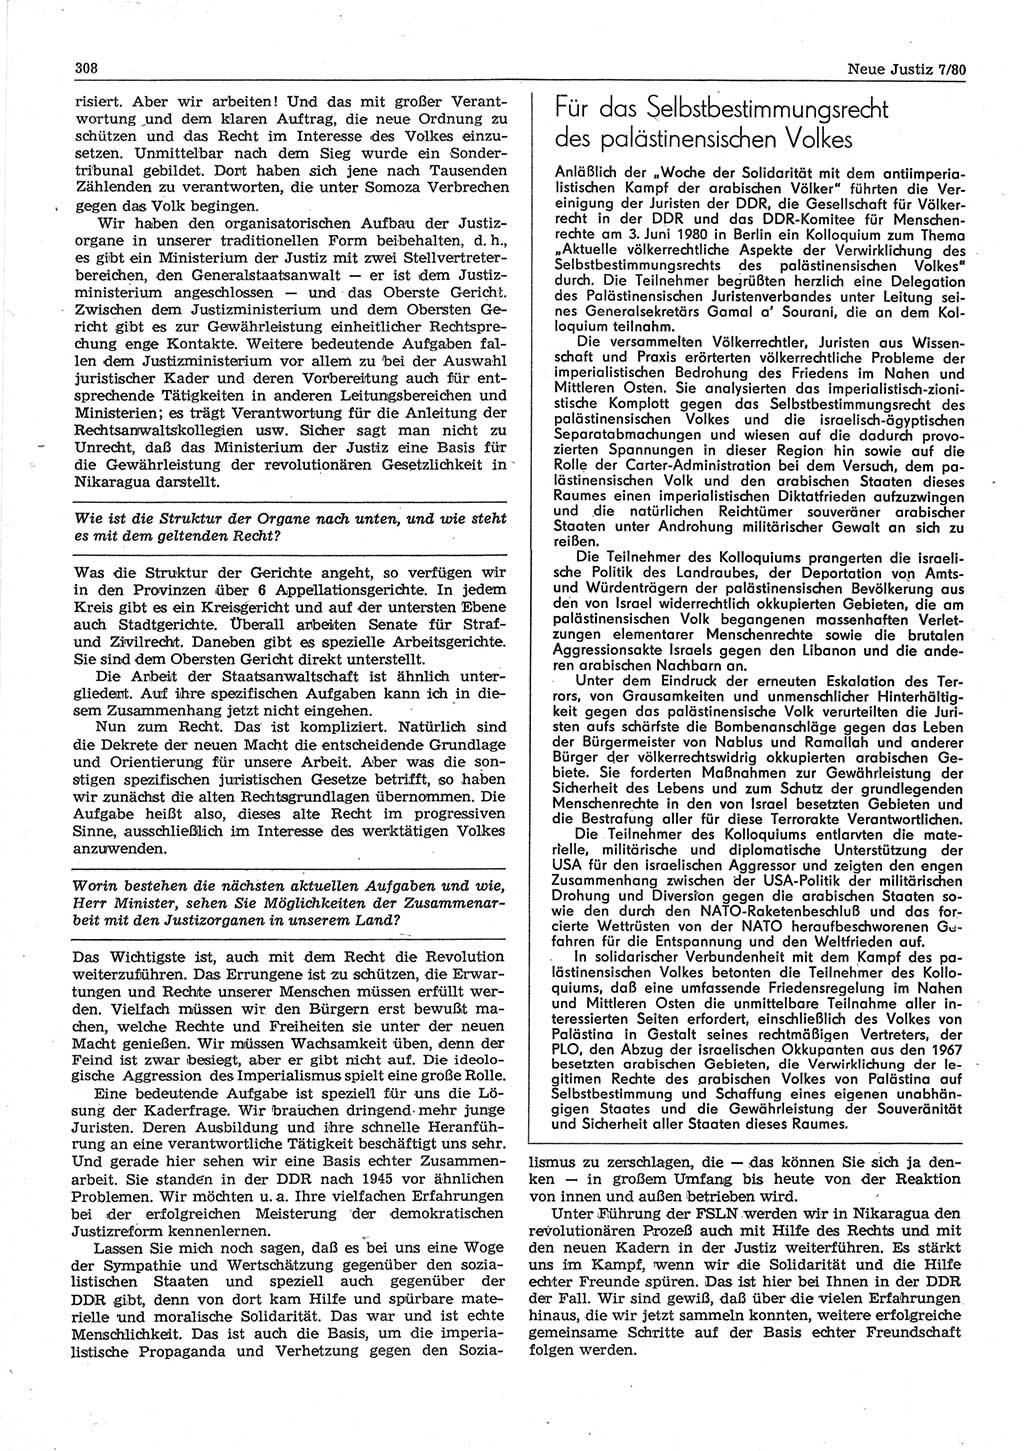 Neue Justiz (NJ), Zeitschrift für sozialistisches Recht und Gesetzlichkeit [Deutsche Demokratische Republik (DDR)], 34. Jahrgang 1980, Seite 308 (NJ DDR 1980, S. 308)